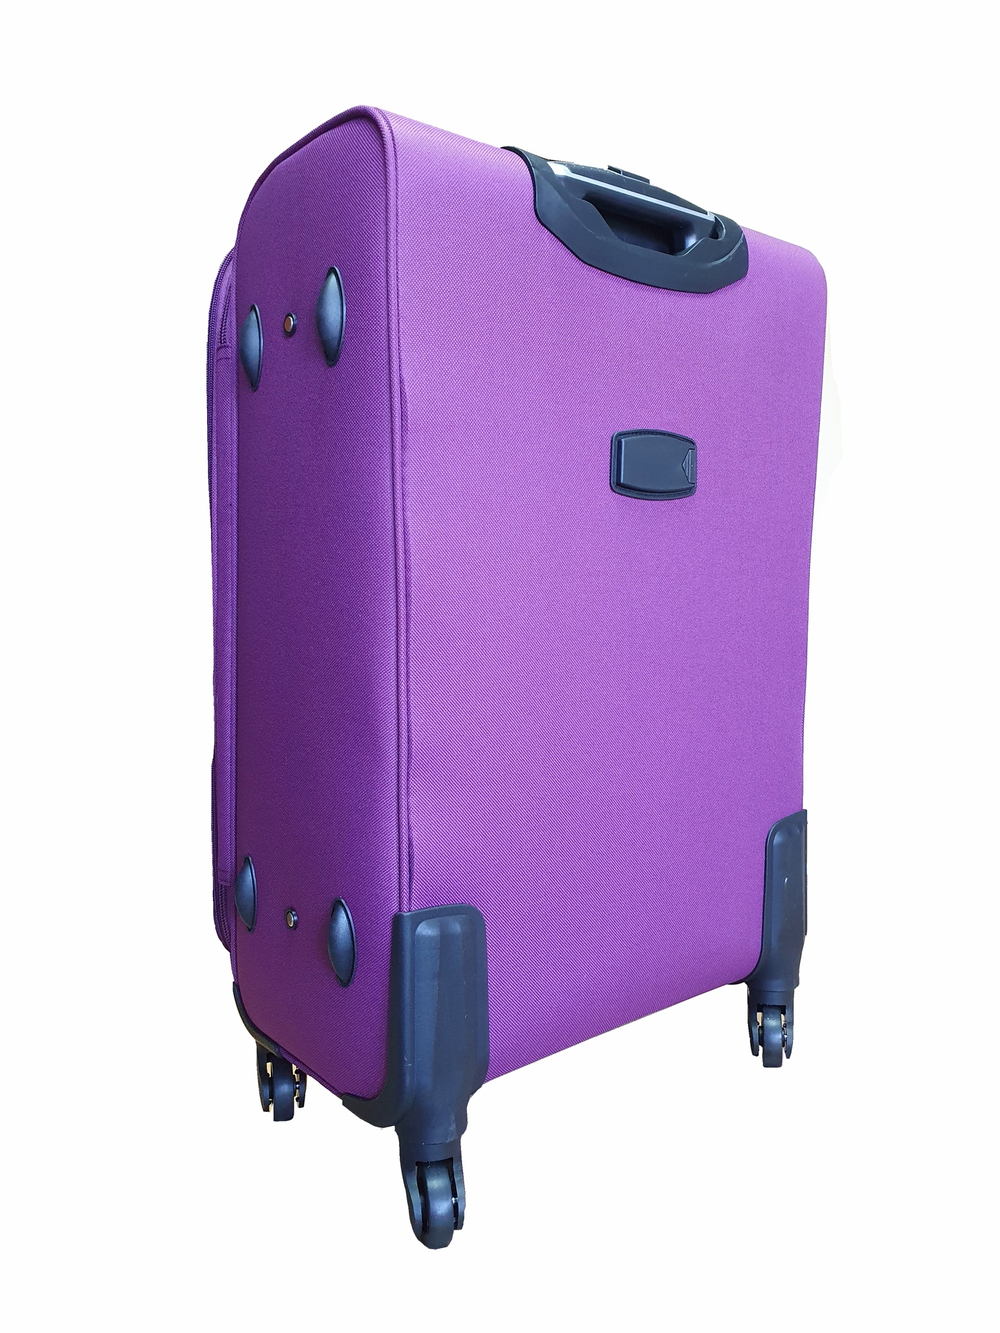 Чемодан на колесах тканевый L’case Barcelona размера M+ (70.5х45х30 (+5) см), объем 85 литров, вес 3,75 кг, Фиолетовый